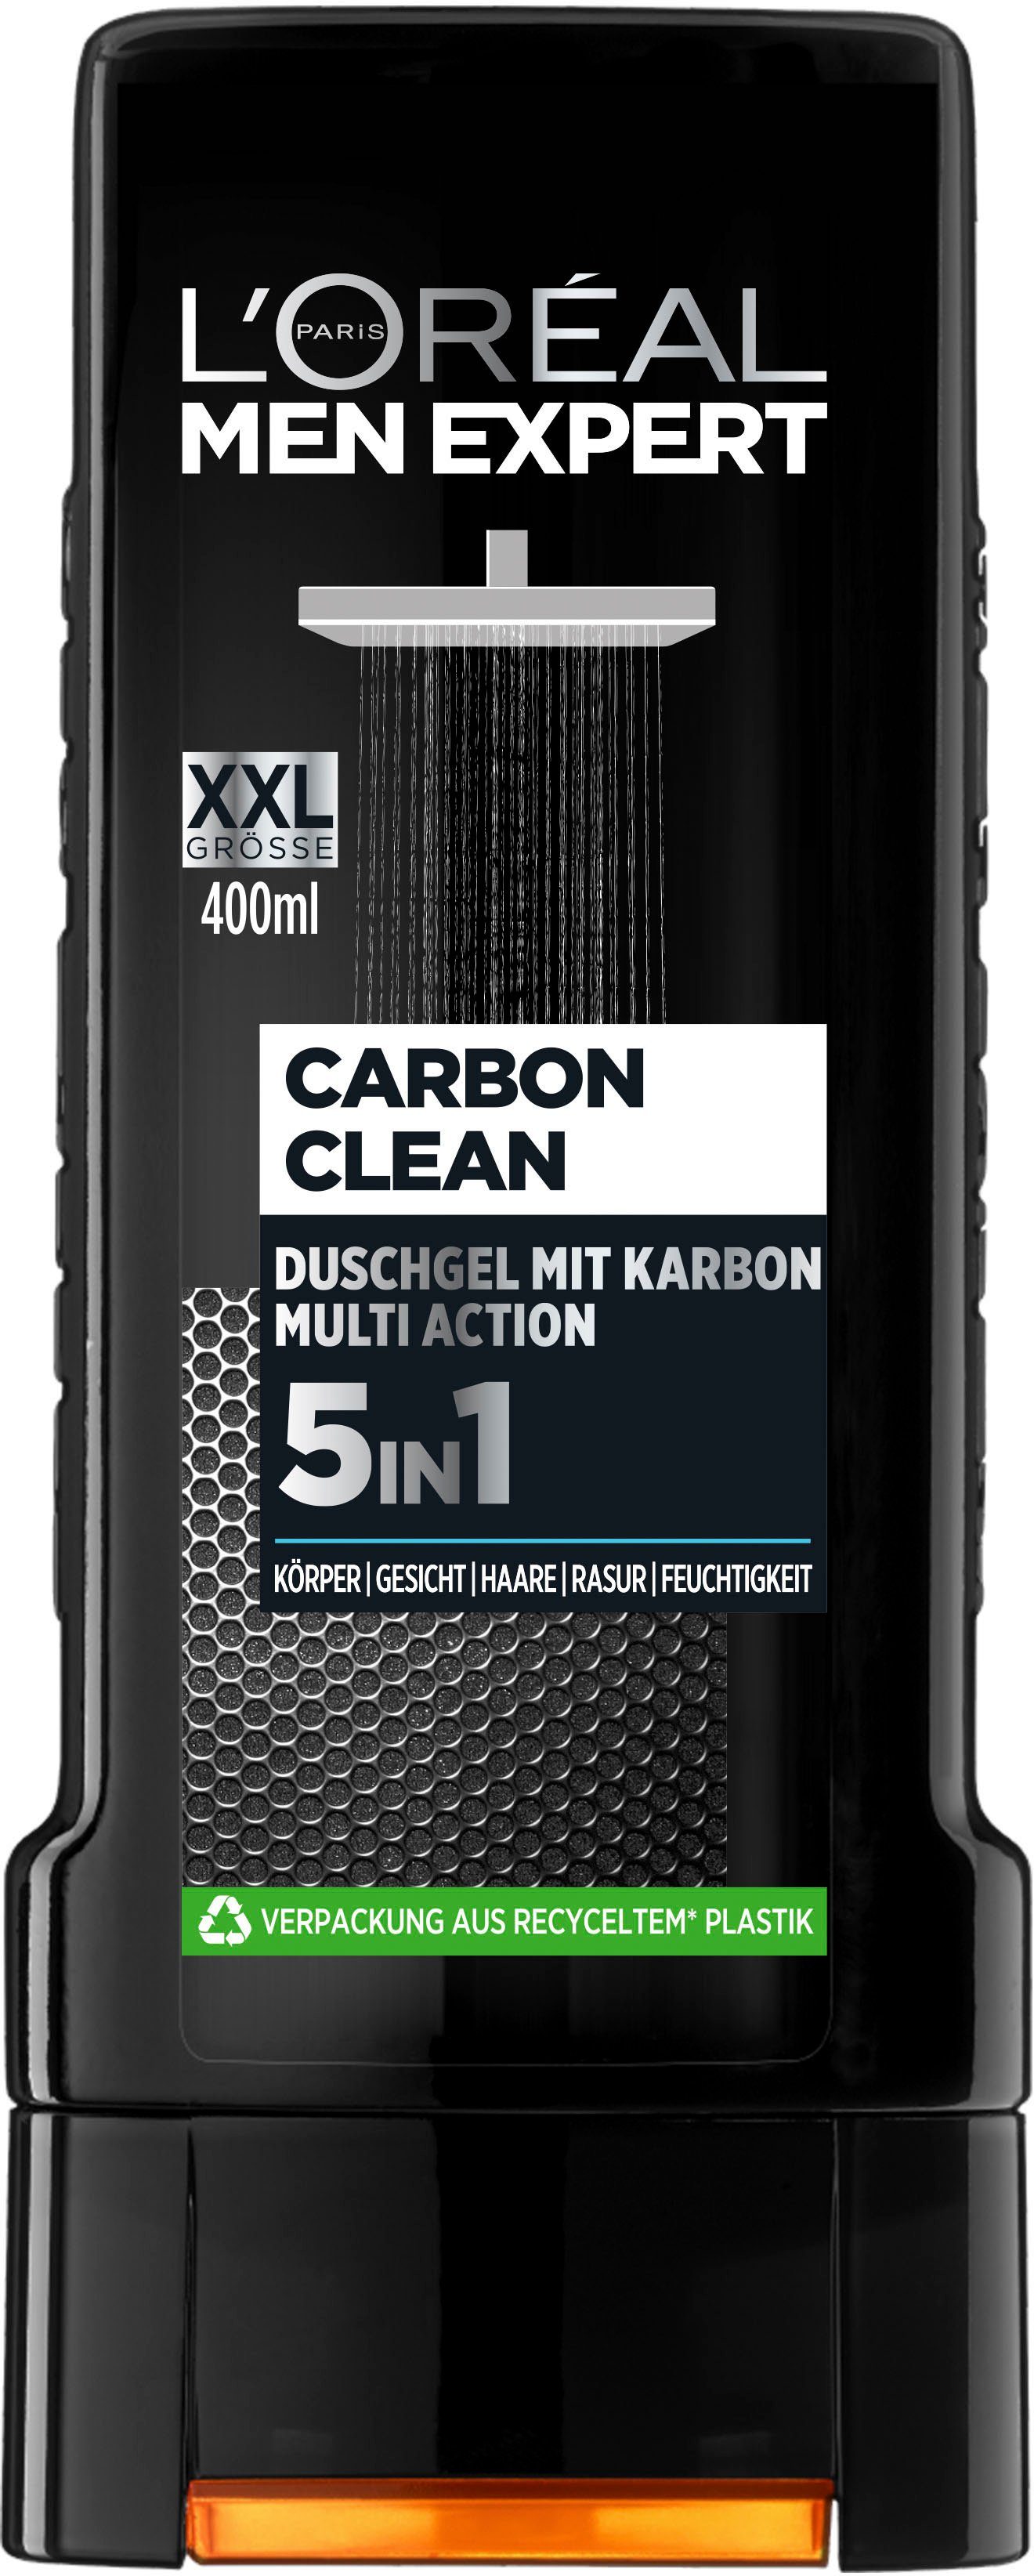 L'ORÉAL PARIS MEN EXPERT 5in1 Carbon XXL, 6-tlg. Clean Duschgel